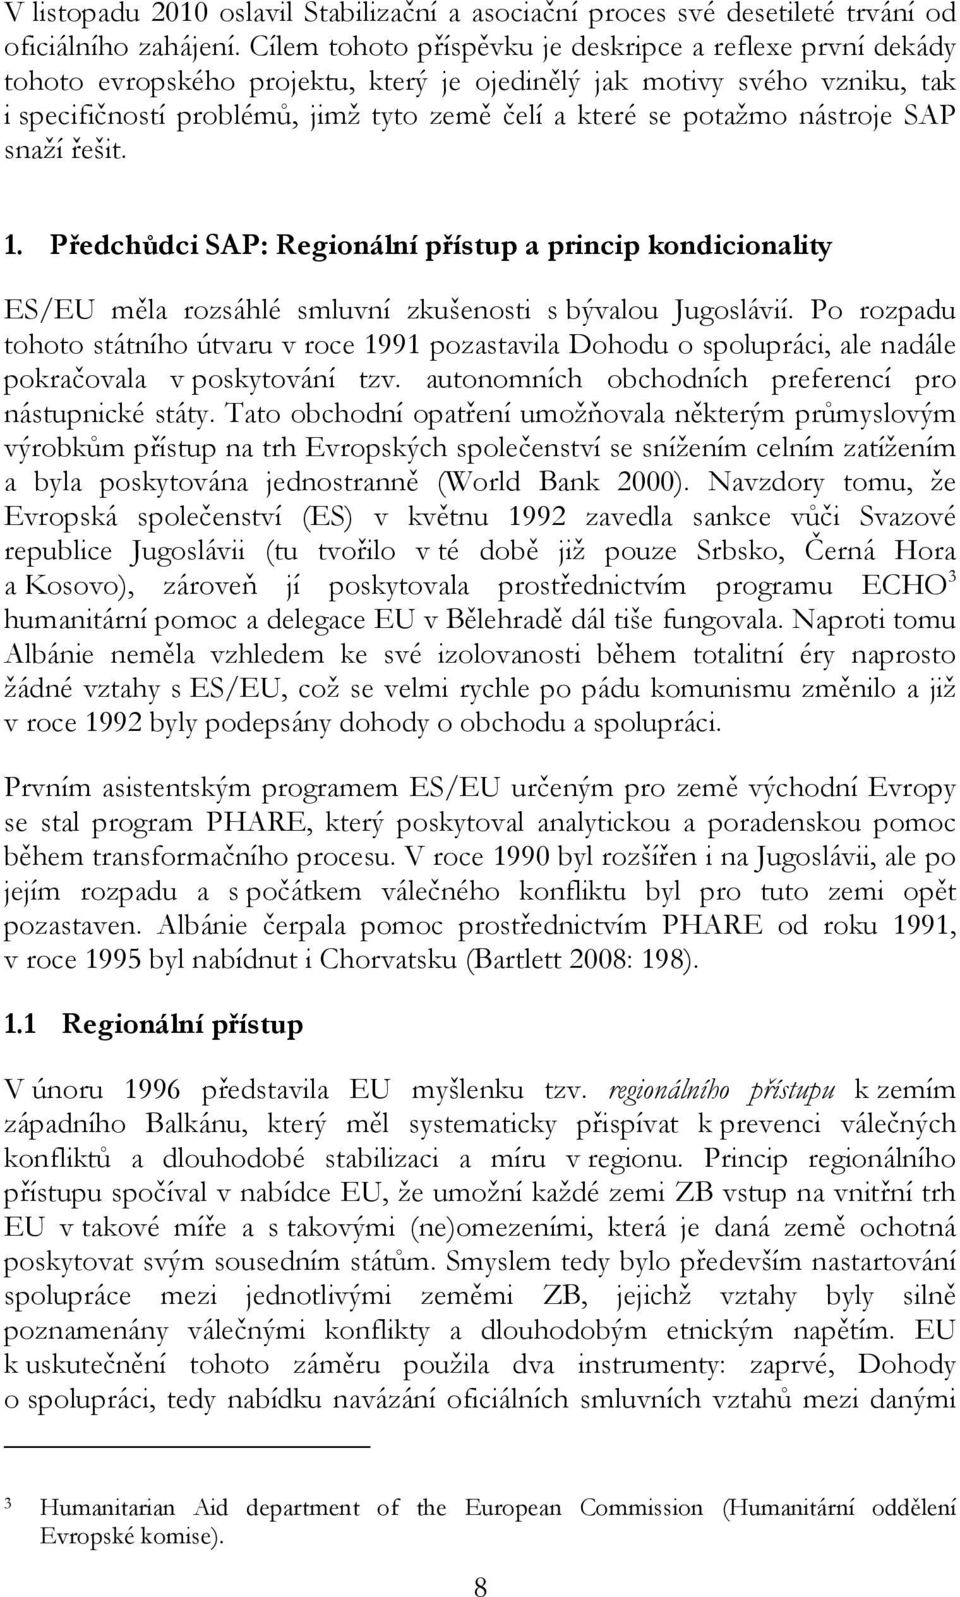 nástroje SAP snaží řešit. 1. Předchůdci SAP: Regionální přístup a princip kondicionality ES/EU měla rozsáhlé smluvní zkušenosti s bývalou Jugoslávií.